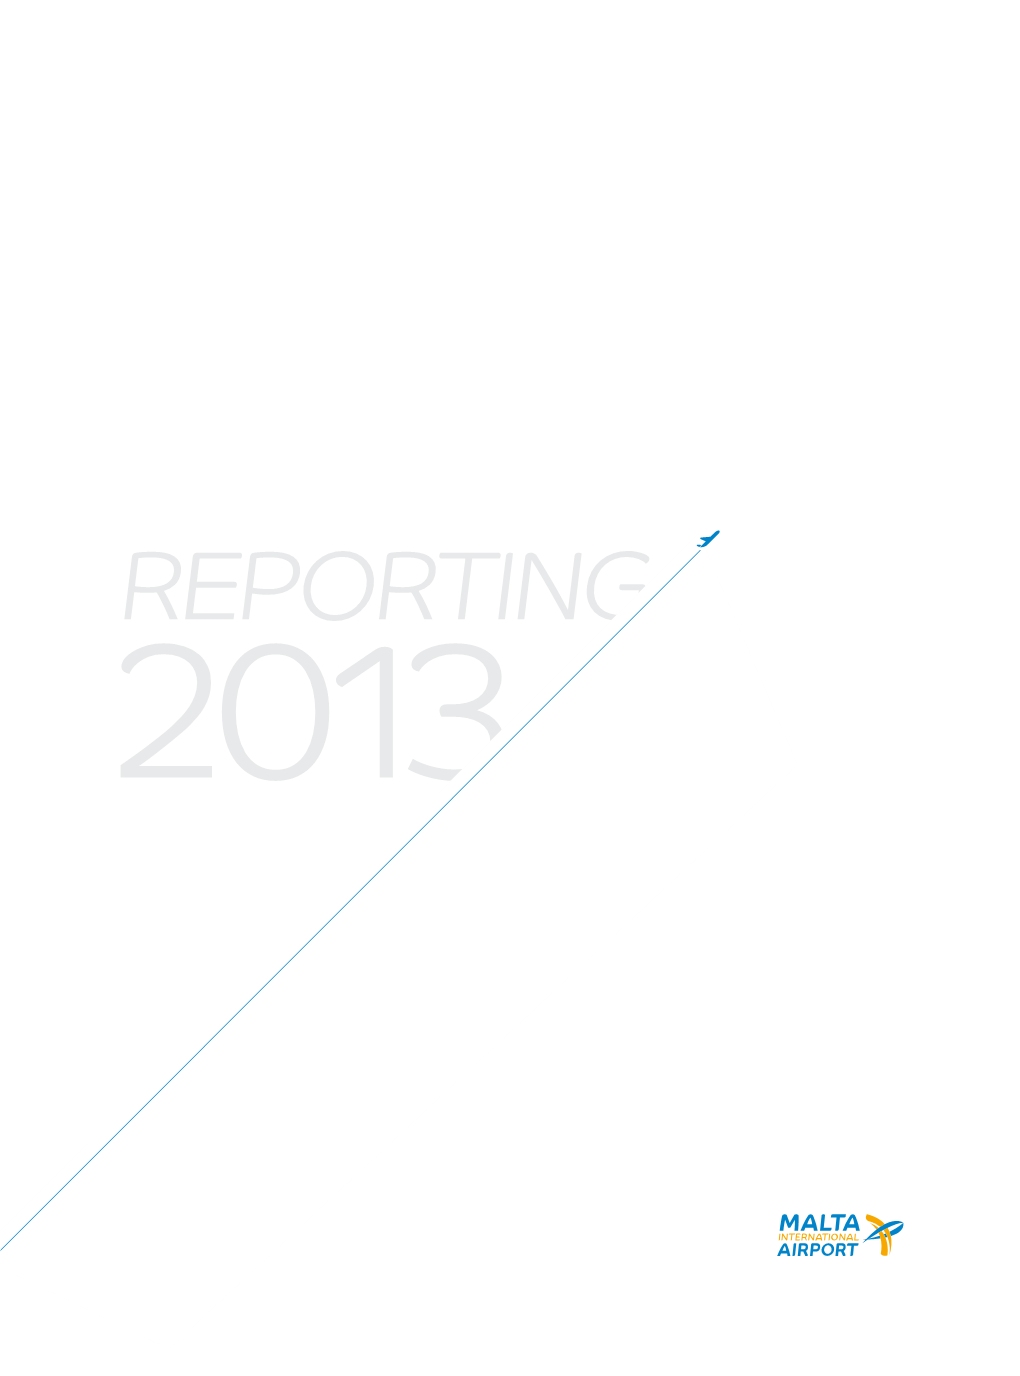 Reporting 2013